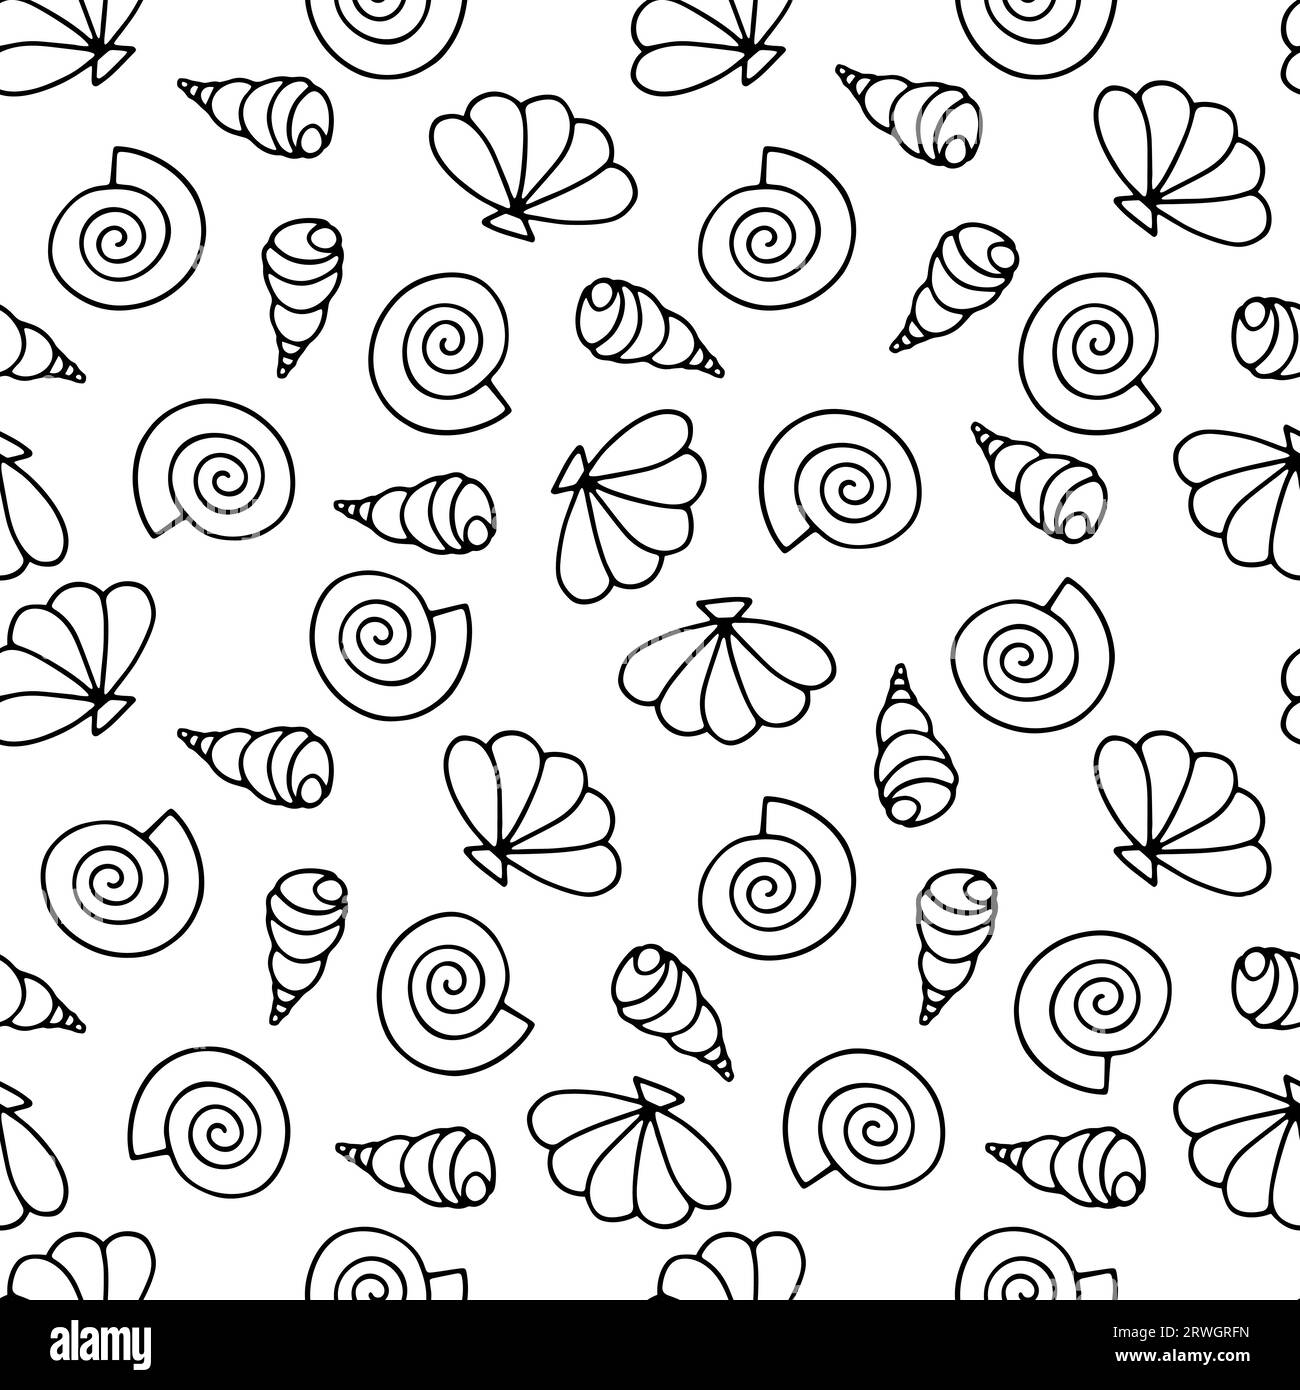 Handgezeichnetes Seashells nahtloses Vektormuster. Schwarze Meeresschnecken isoliert auf weißem Hintergrund. Doodle Muscheln aquatische Illustration für Tapeten, Stock Vektor